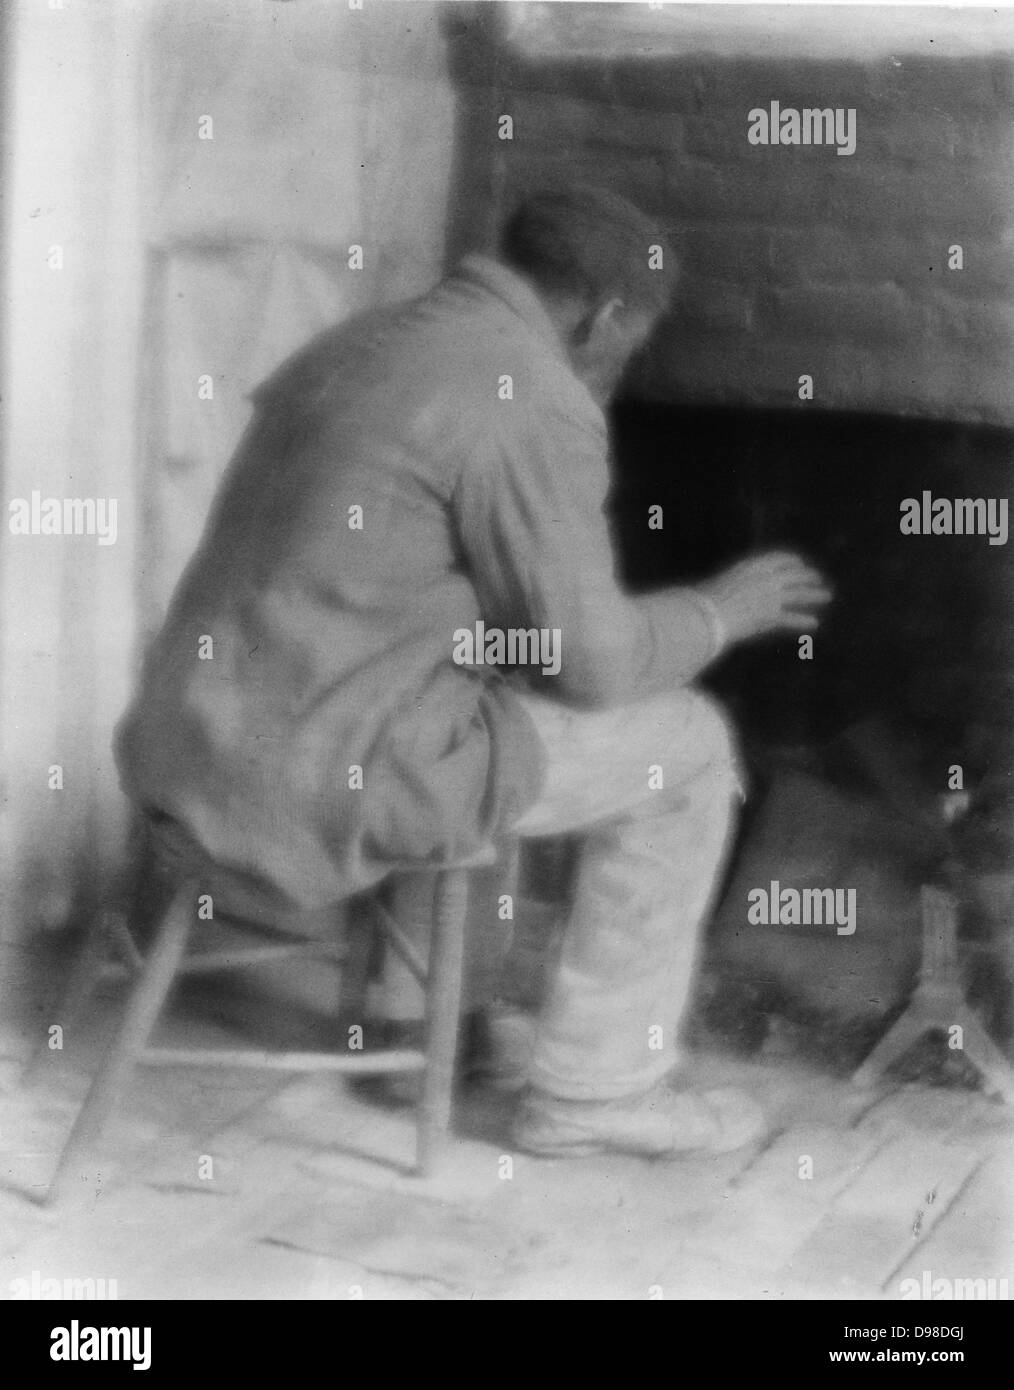 Americano africano, eventualmente un ex schiavo, seduta himslef riscaldamento mediante il fuoco nella sua stanza. Fotografia c1800. Foto Stock